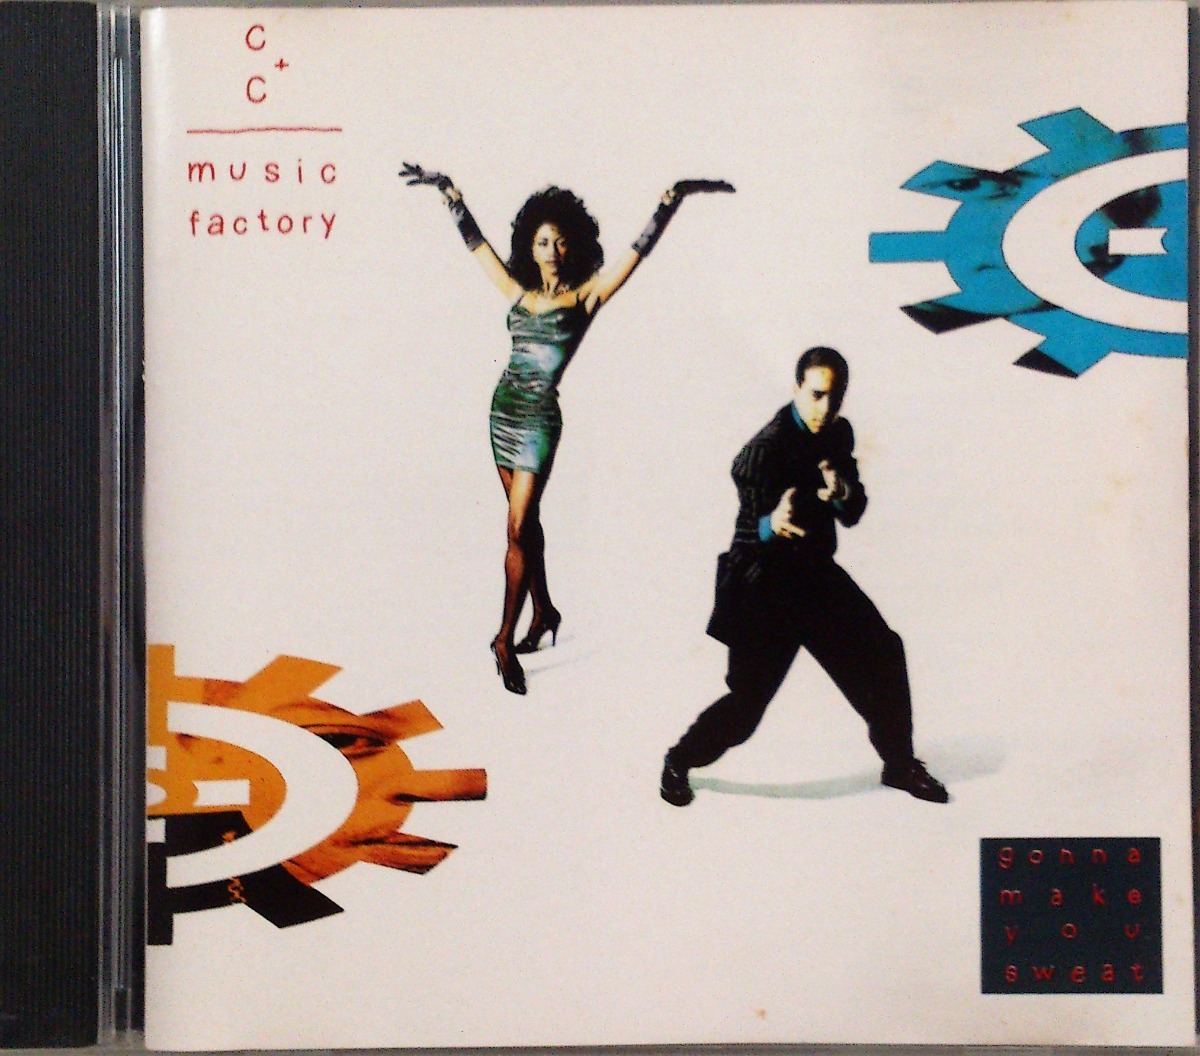 cd-c-c-music-factory-gonna-make-you-sweat-D_NQ_NP_657476-MLB26590565138_012018-F.jpg